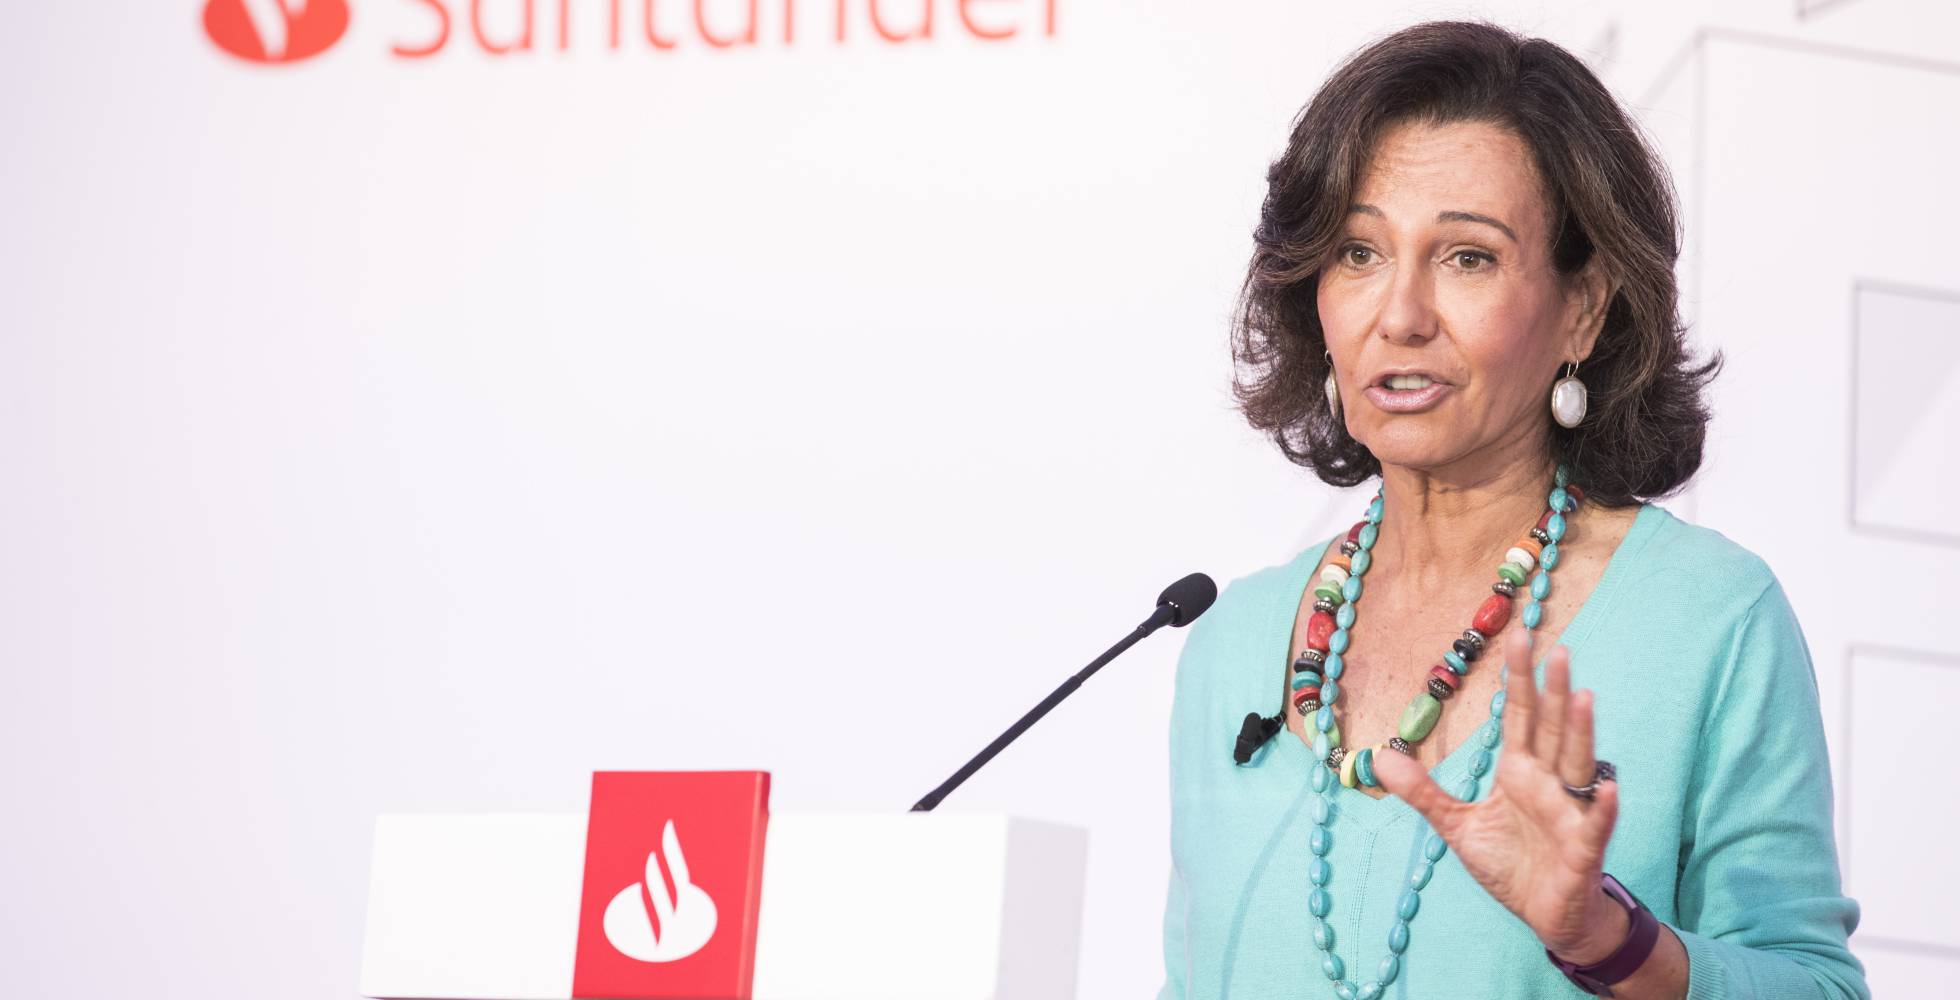 La presidenta del Santander achaca a la mala gestión las turbulencias de la banca